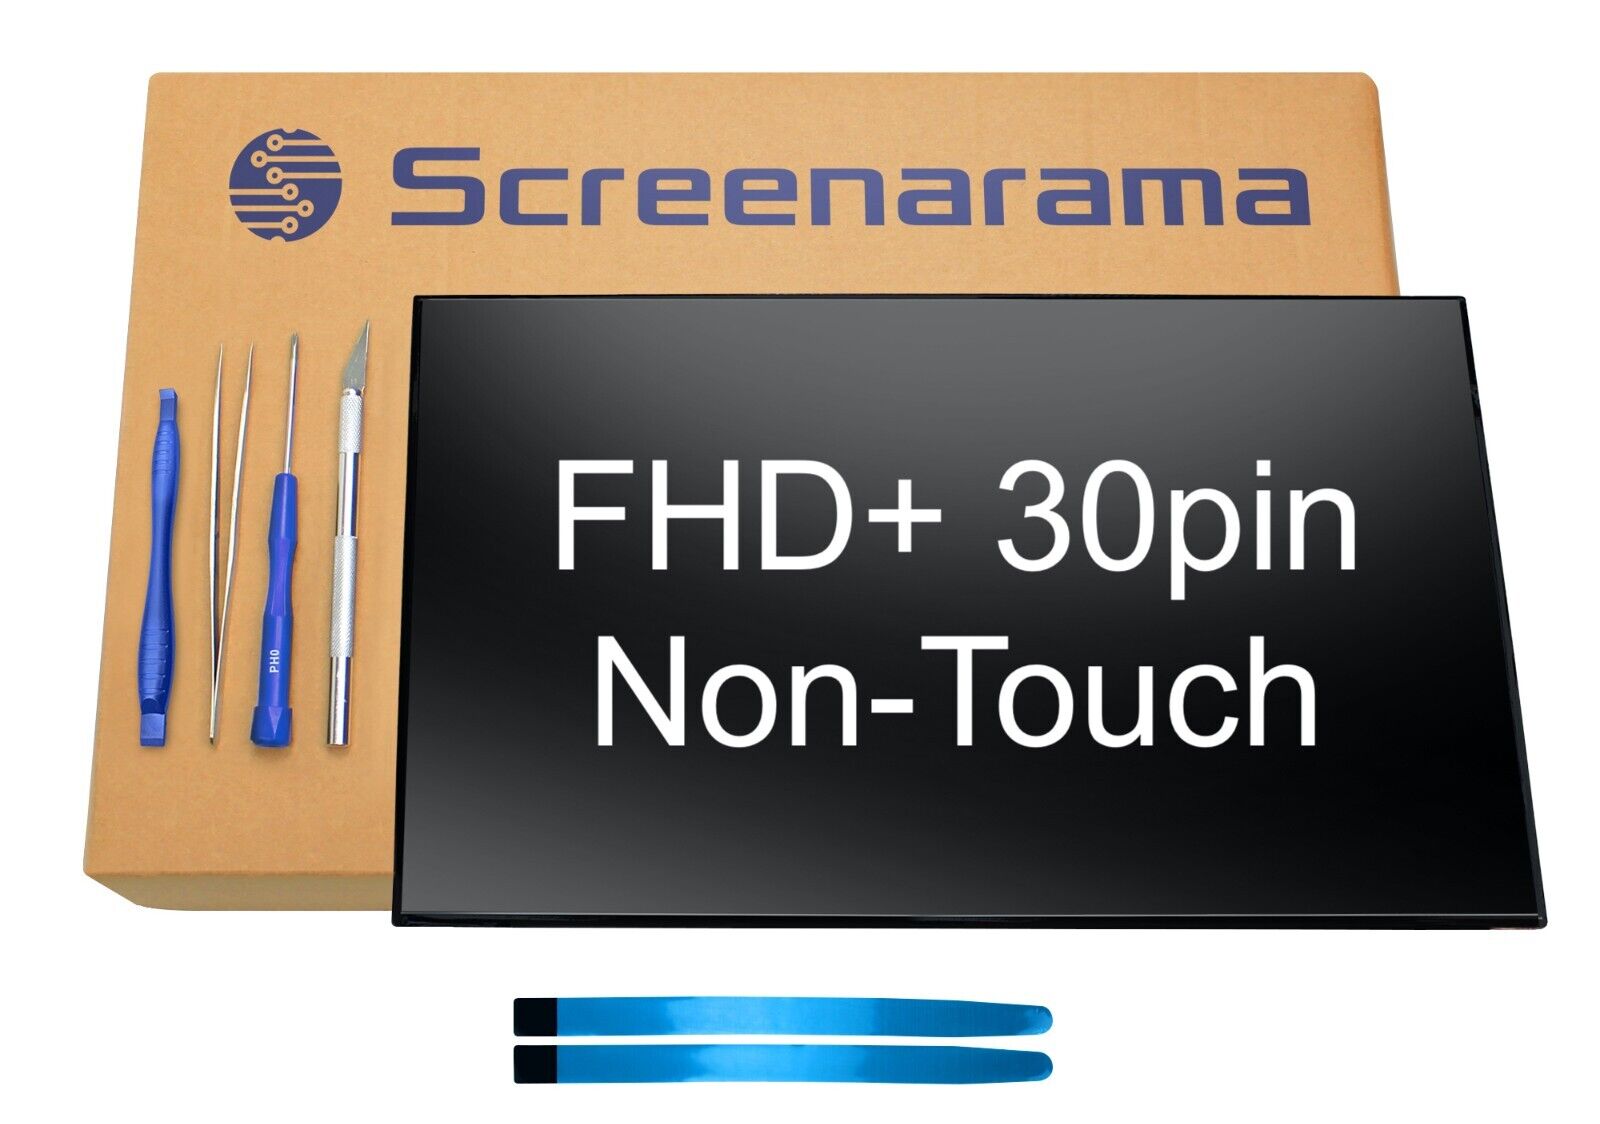 AUO B140UAN03.0 FHD+ 30pin LED LCD Screen + Tools SCREENARAMA * FAST